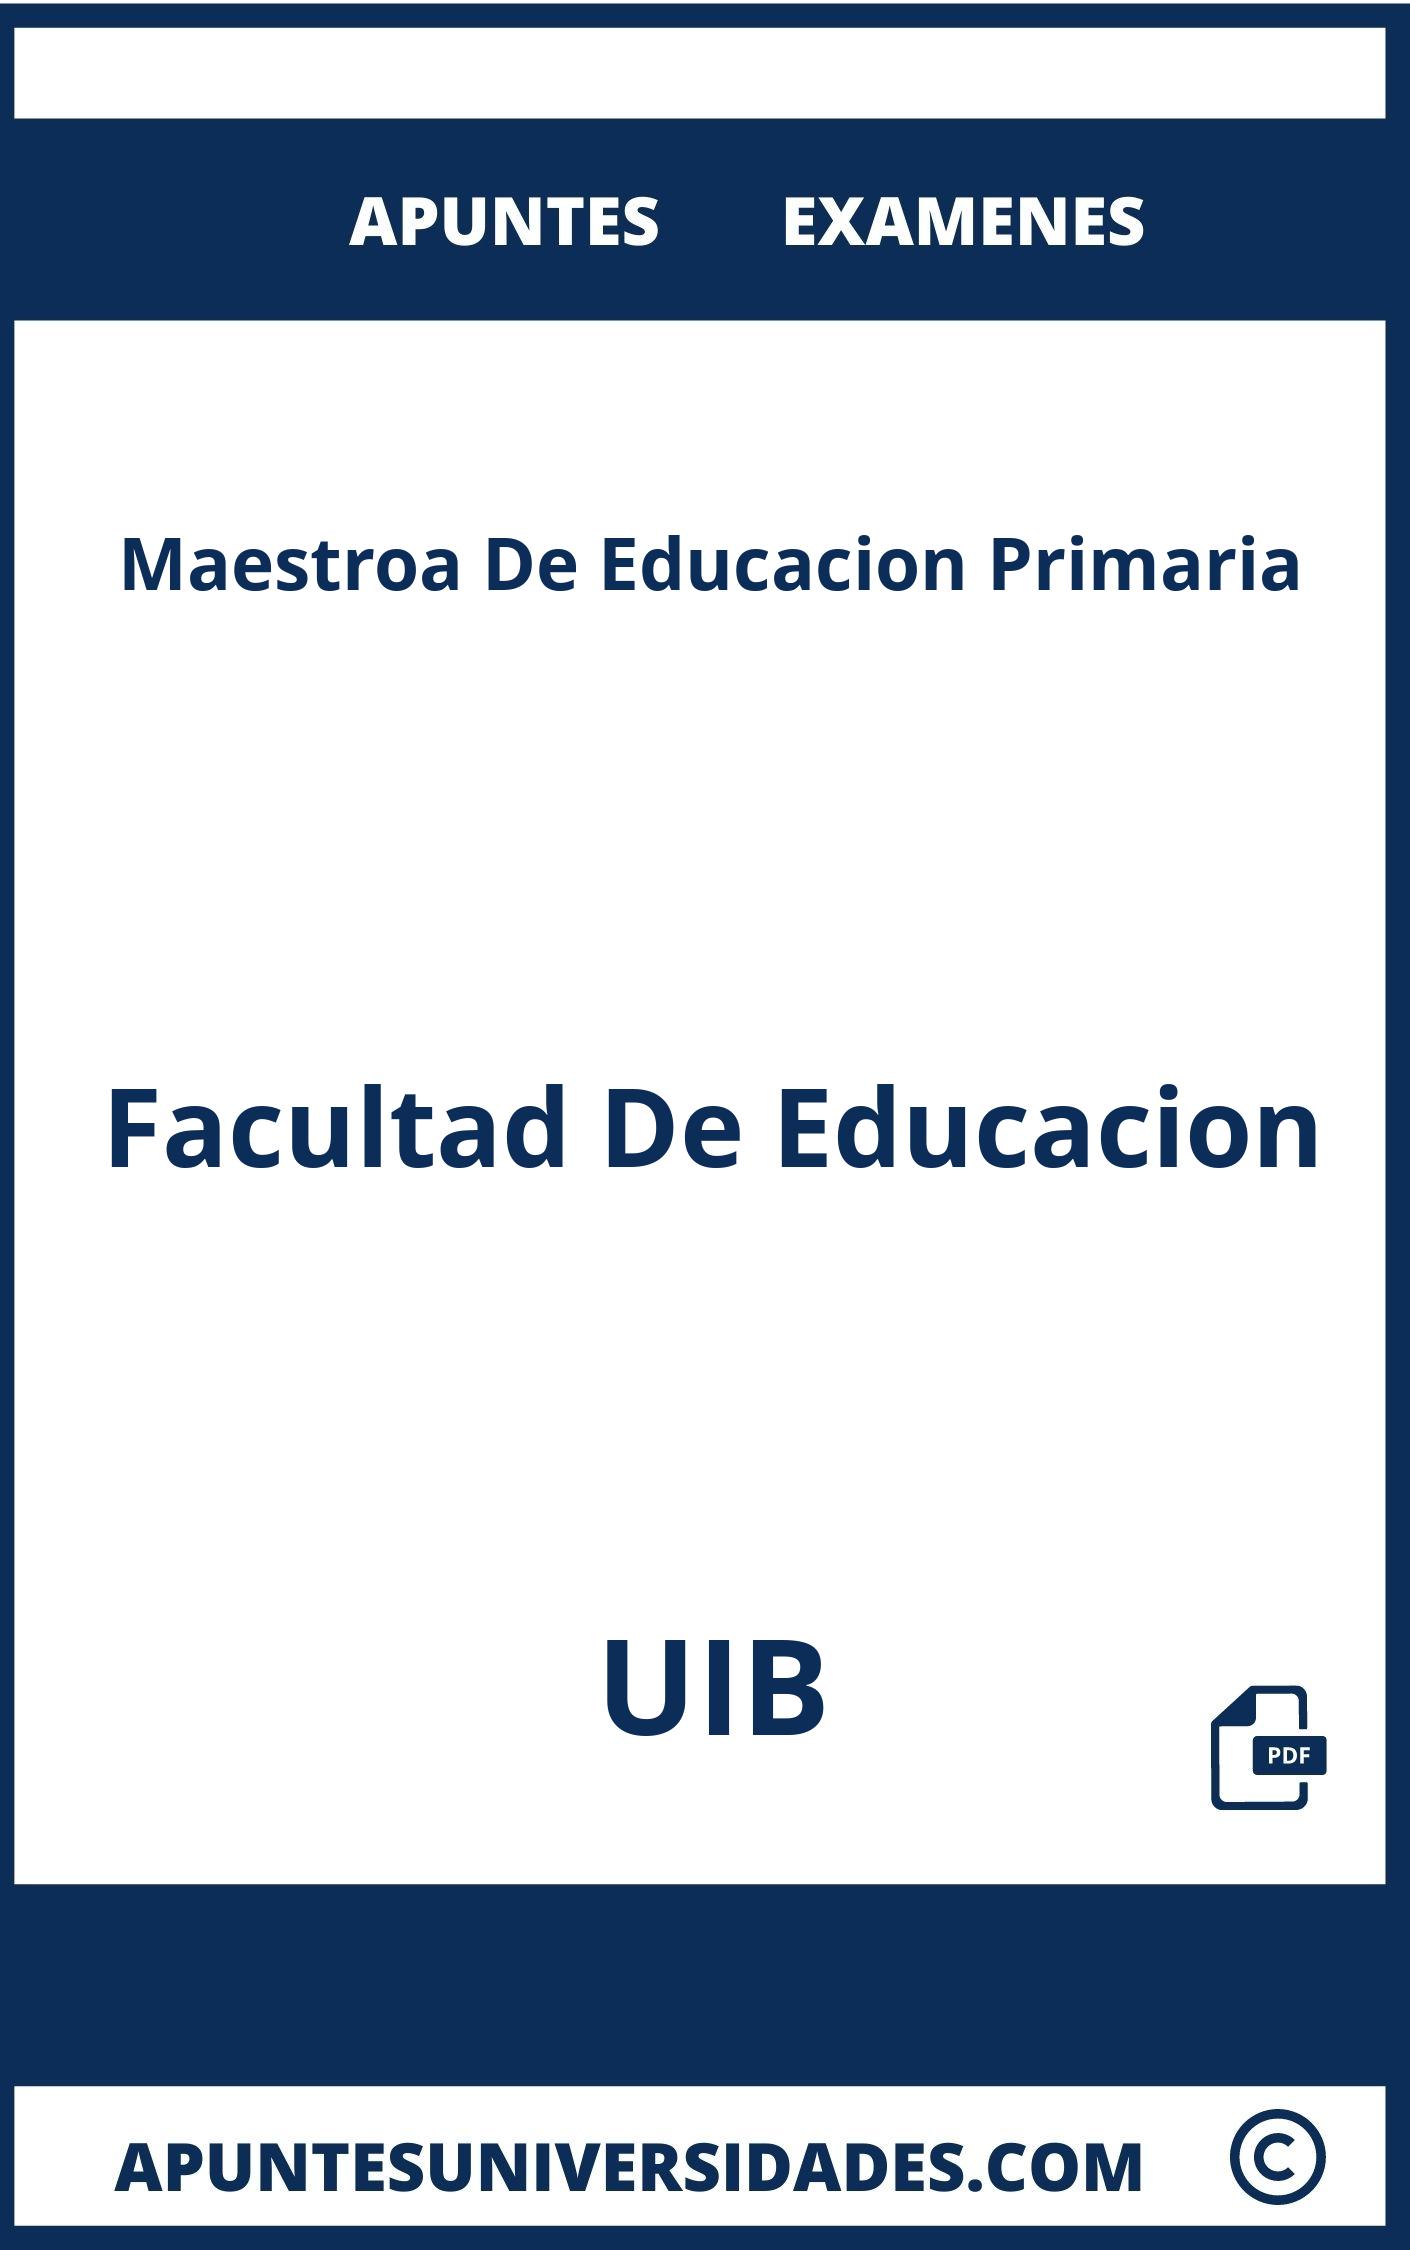 Apuntes Examenes Maestroa De Educacion Primaria UIB